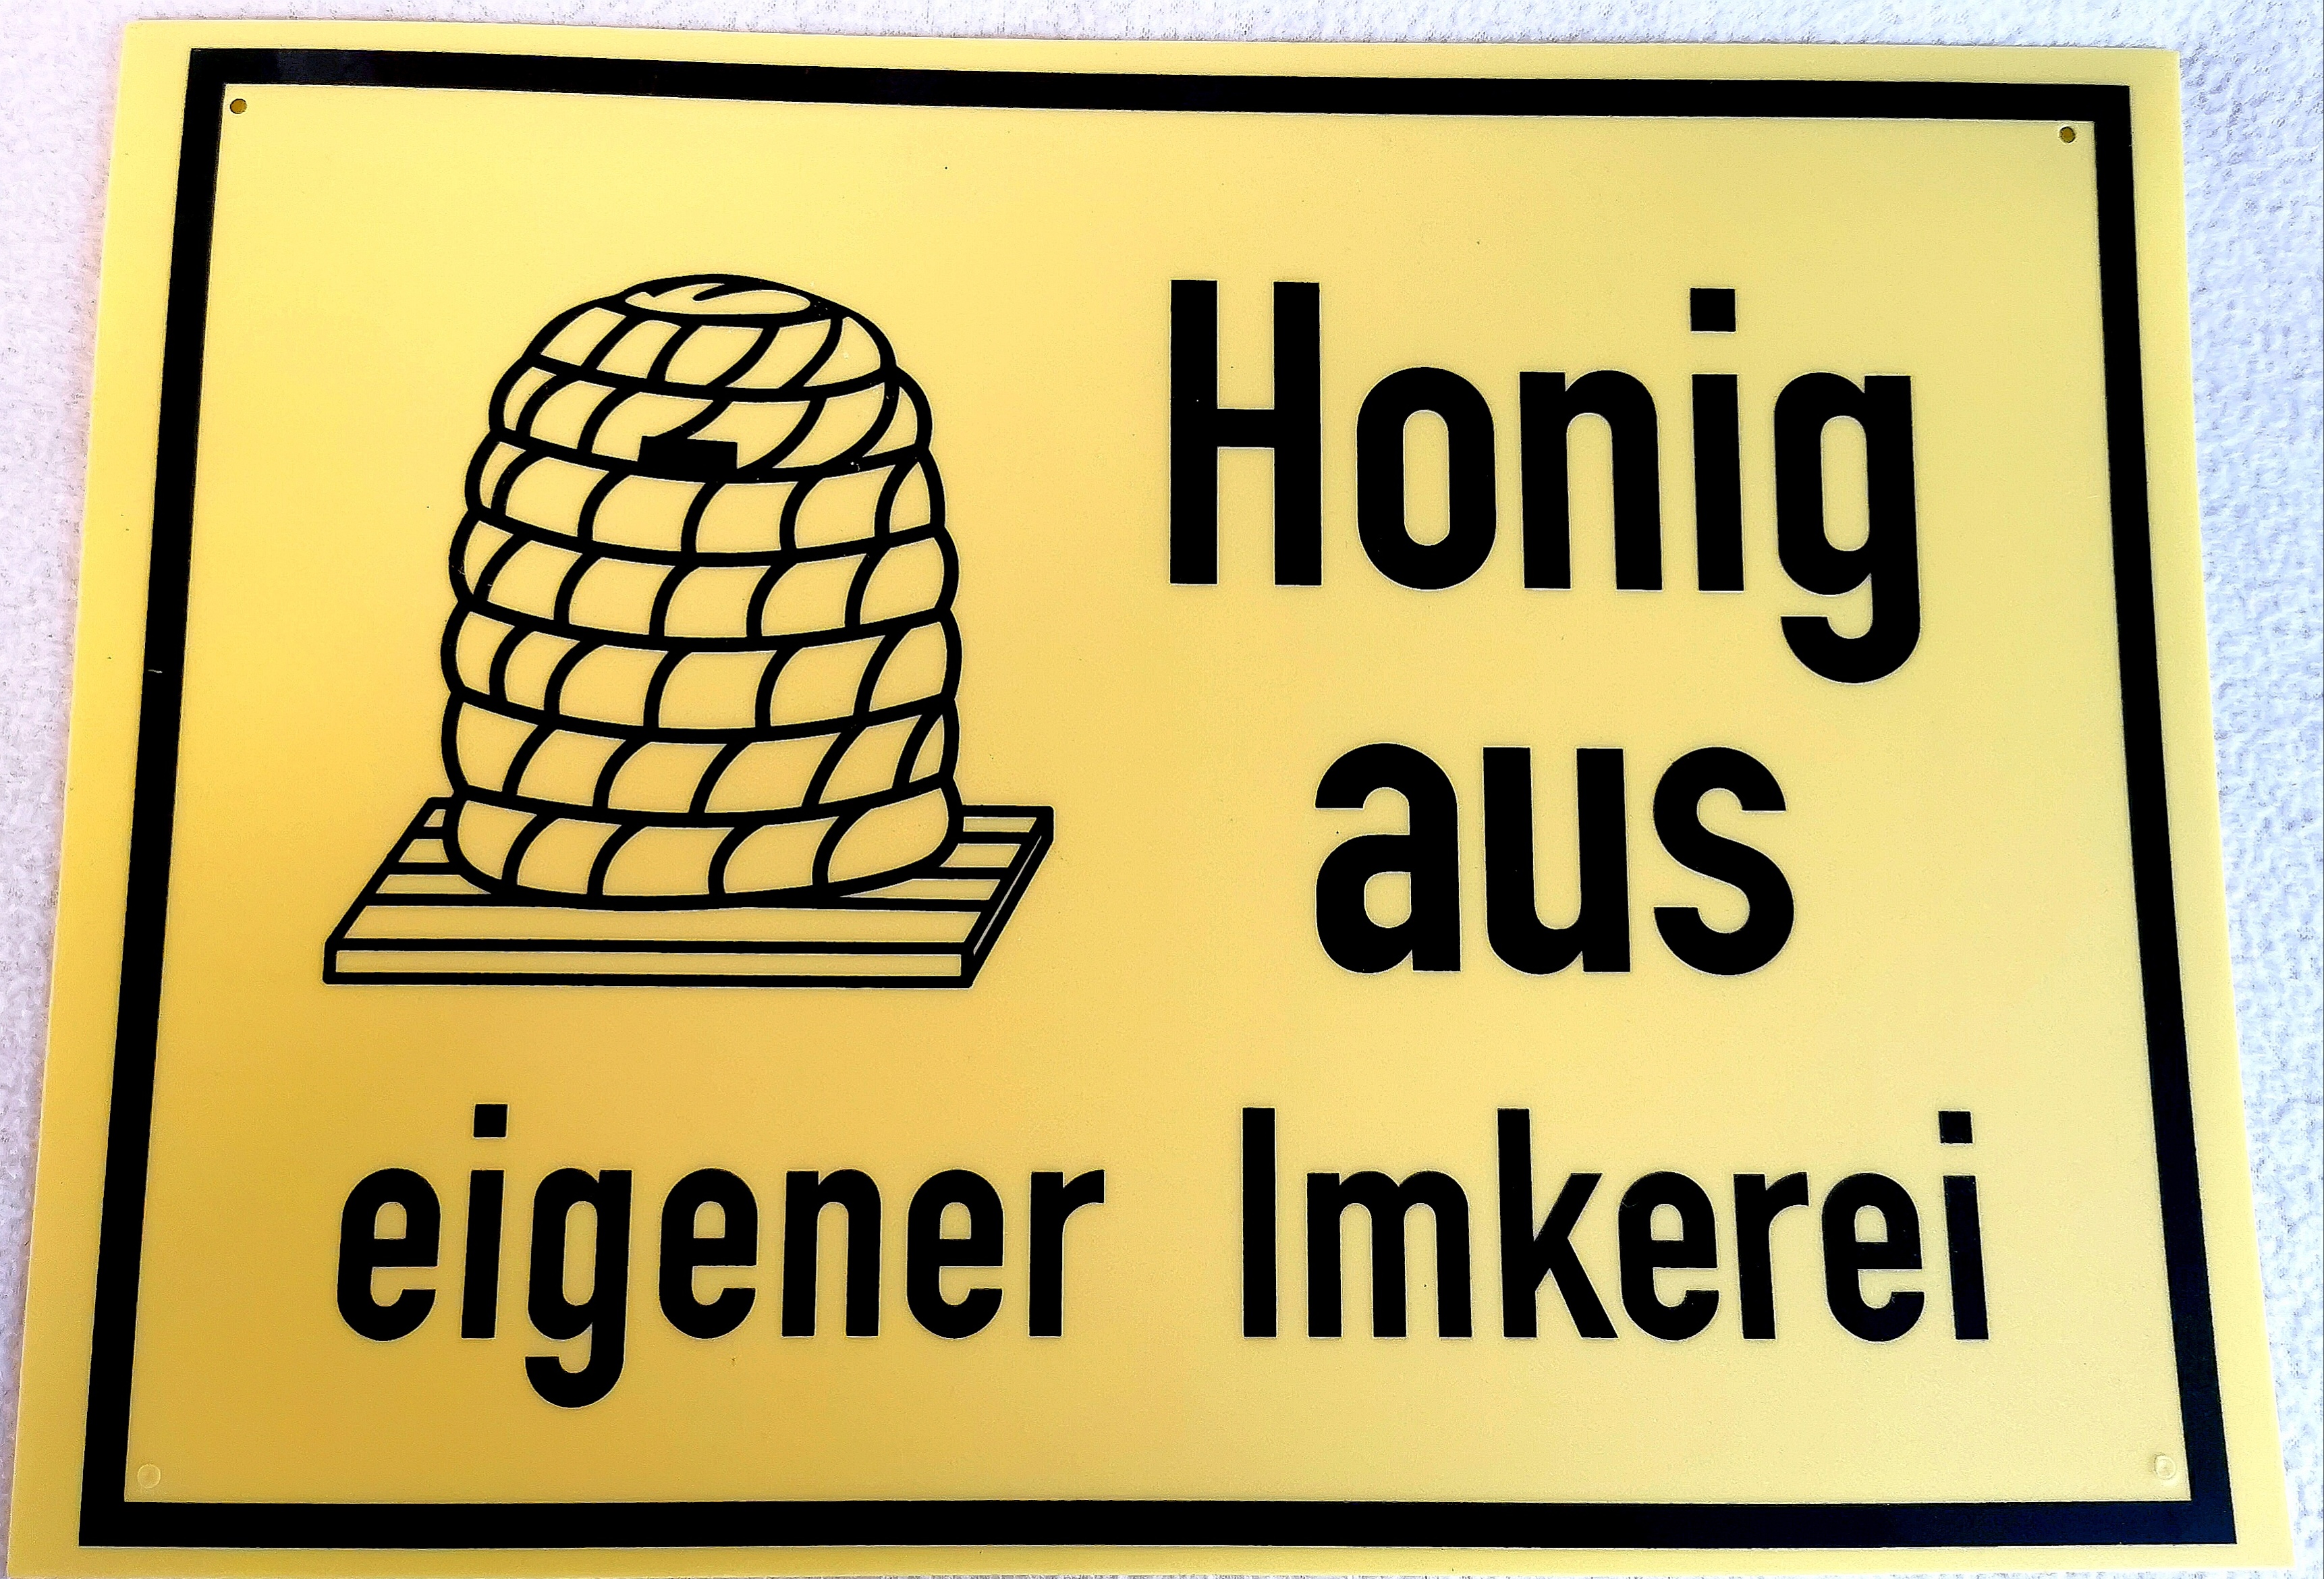 Werbeschild Honig aus eigener Imkerei,35x25cm,Imker,Bienen 